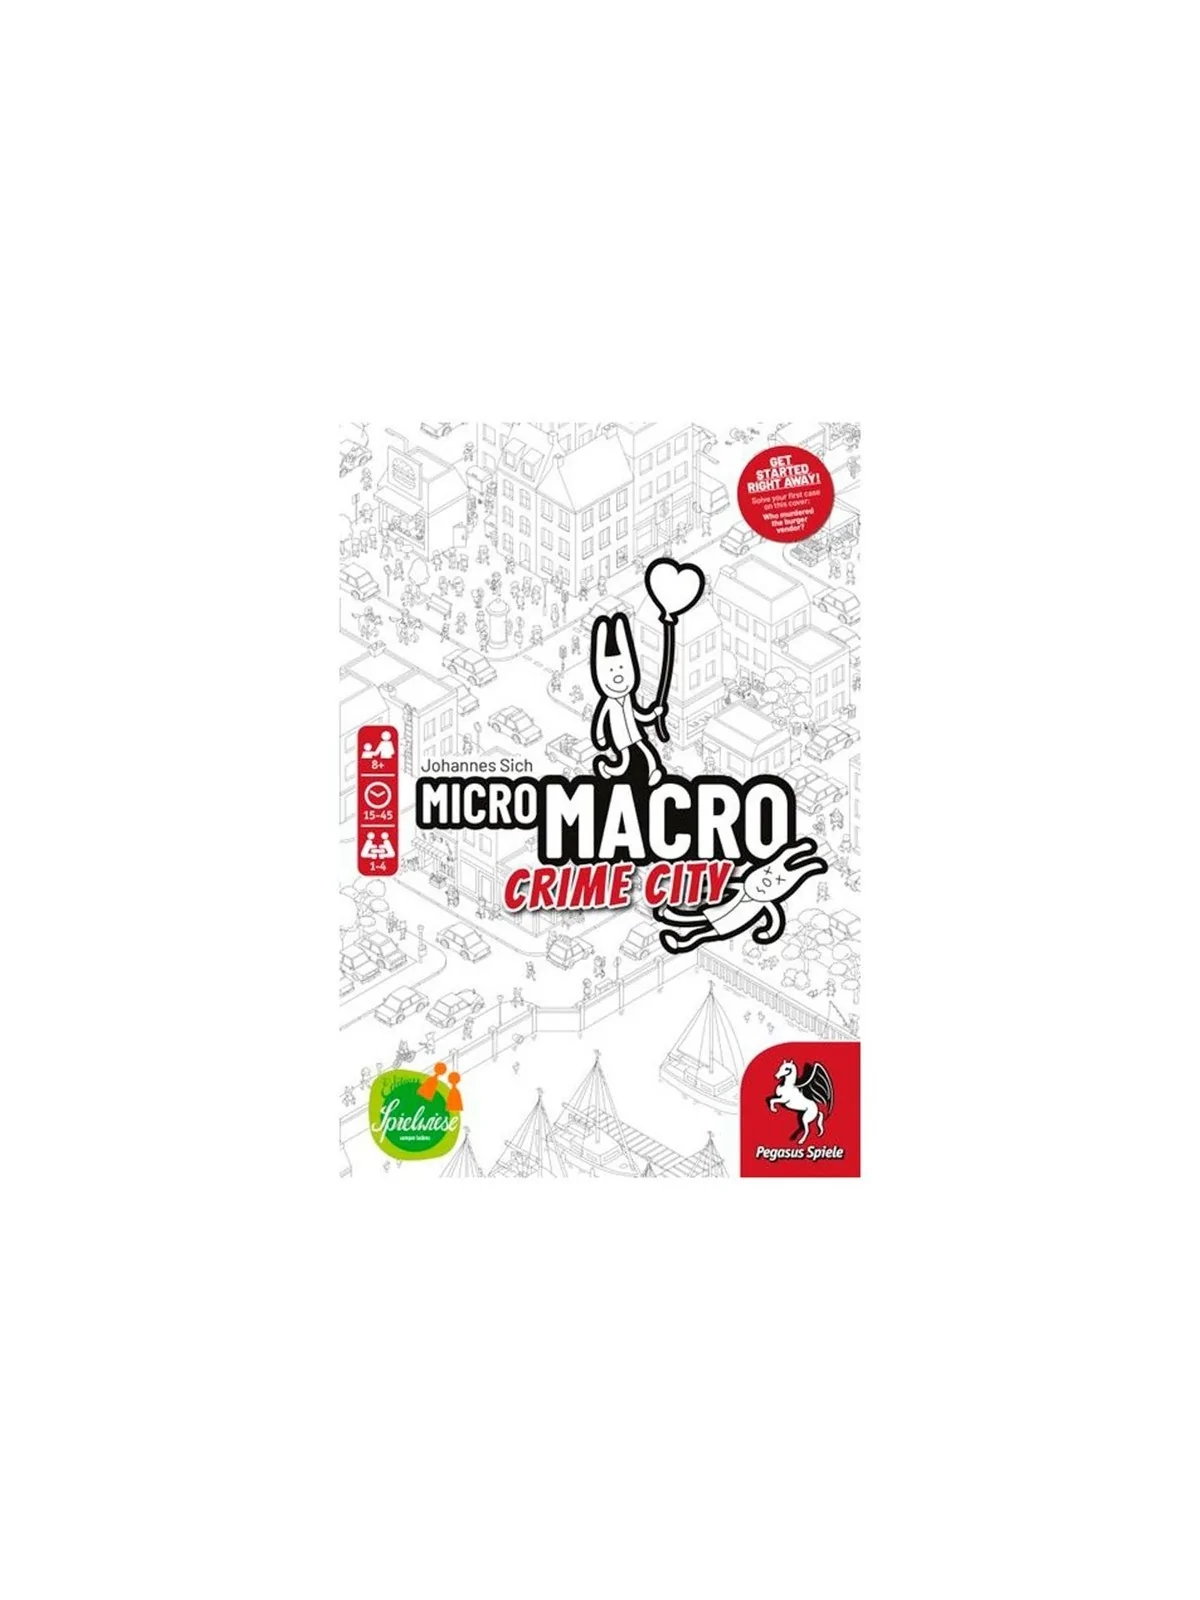 Comprar Micro Macro: Crime City (Ingles) barato al mejor precio 22,46 